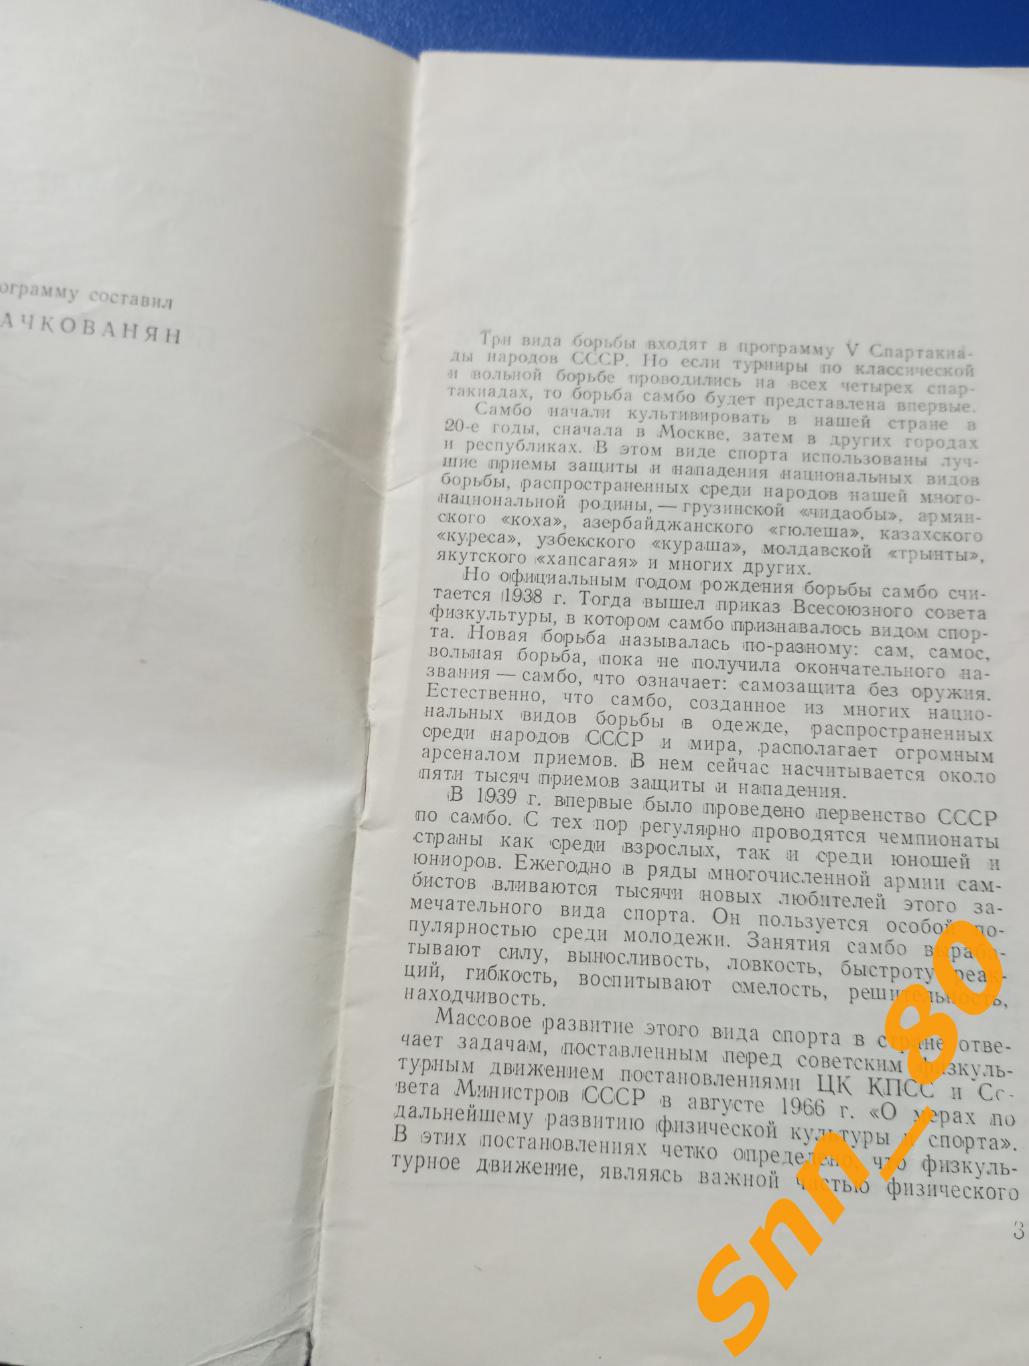 Борьба самбо 5-я Спартакиада народов СССР 16-20 июля 1971 Москва ЦСКА 1